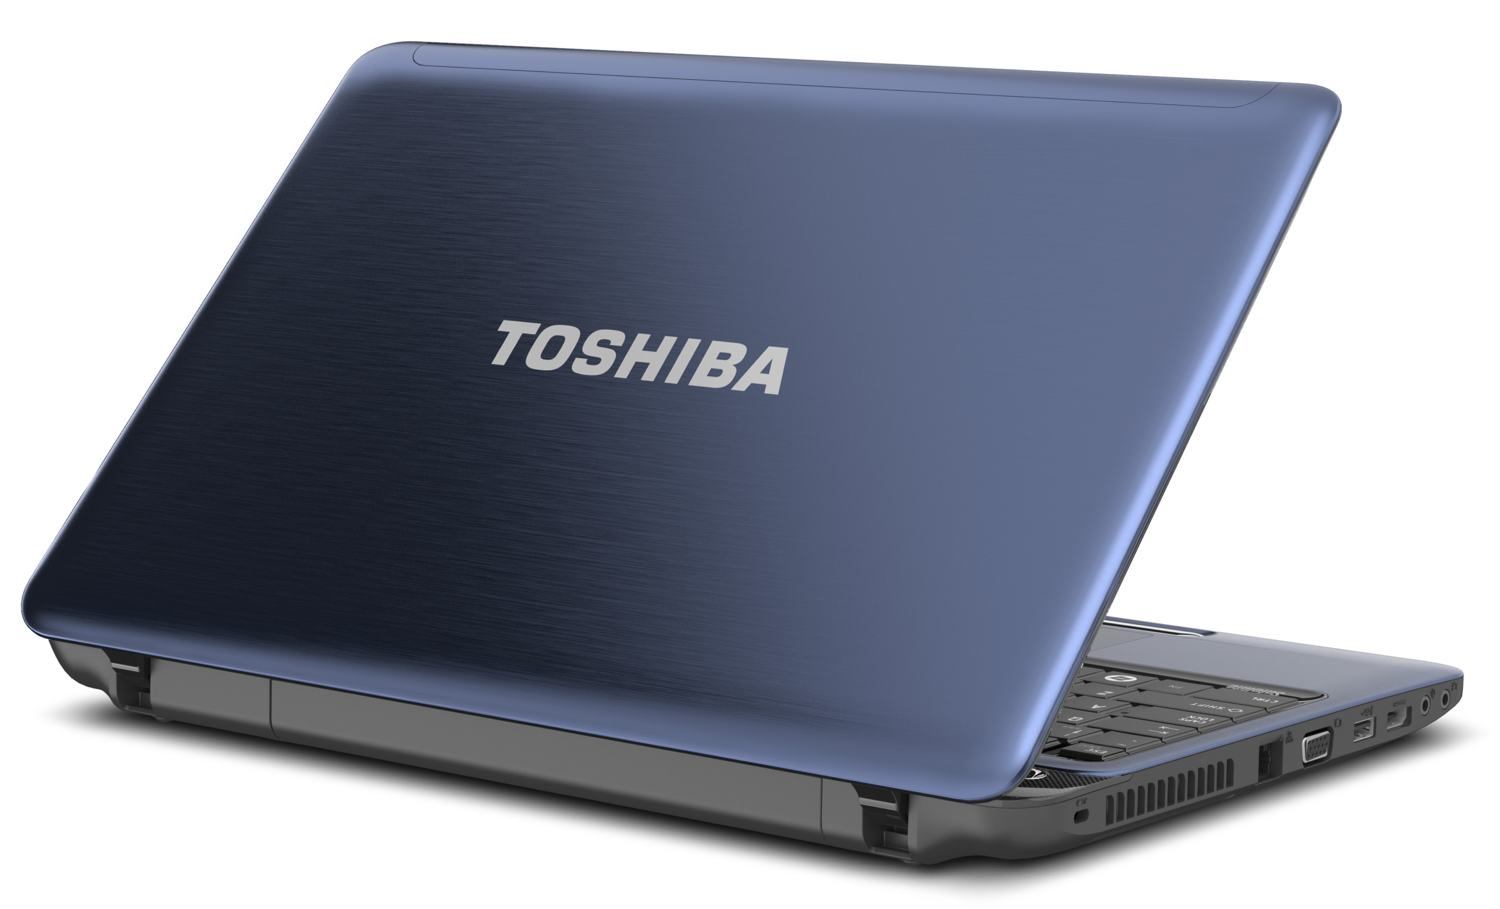 Sửa Laptop Toshiba tại TPHCM: Uy Tín, Giá Rẻ